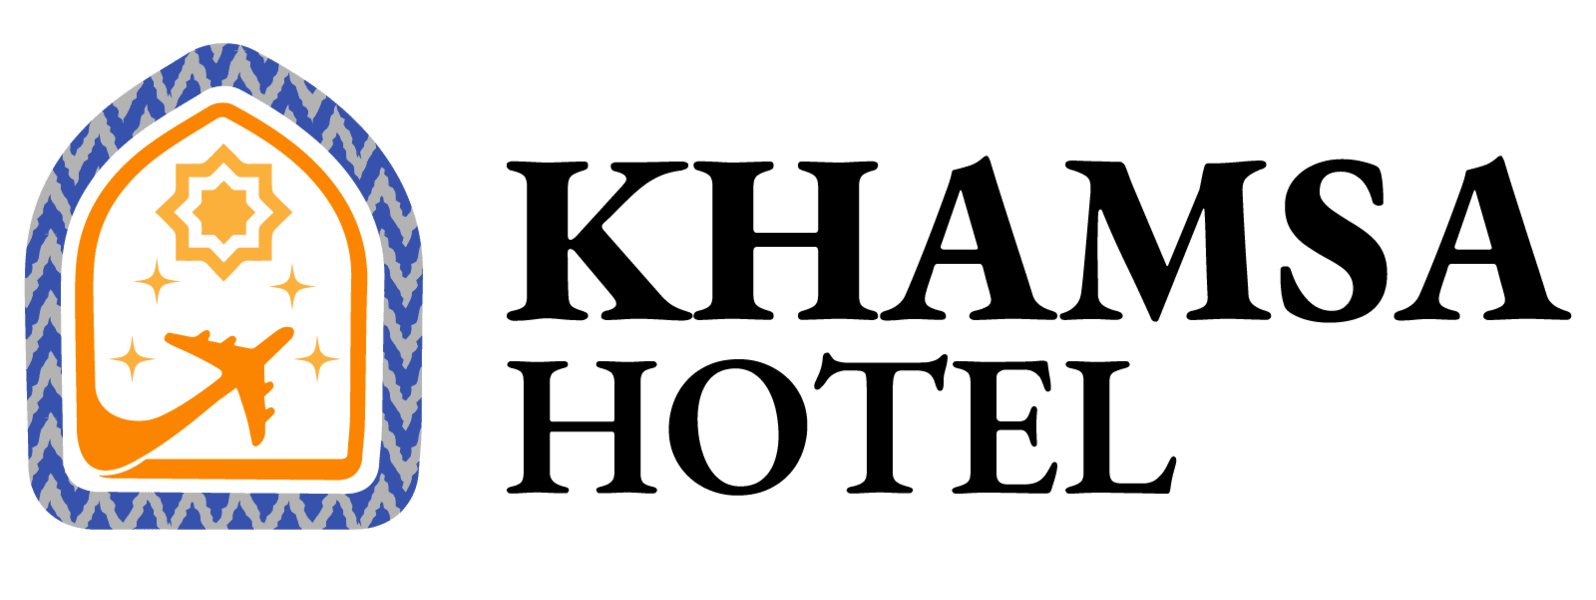 Khamsa Hotel Logo